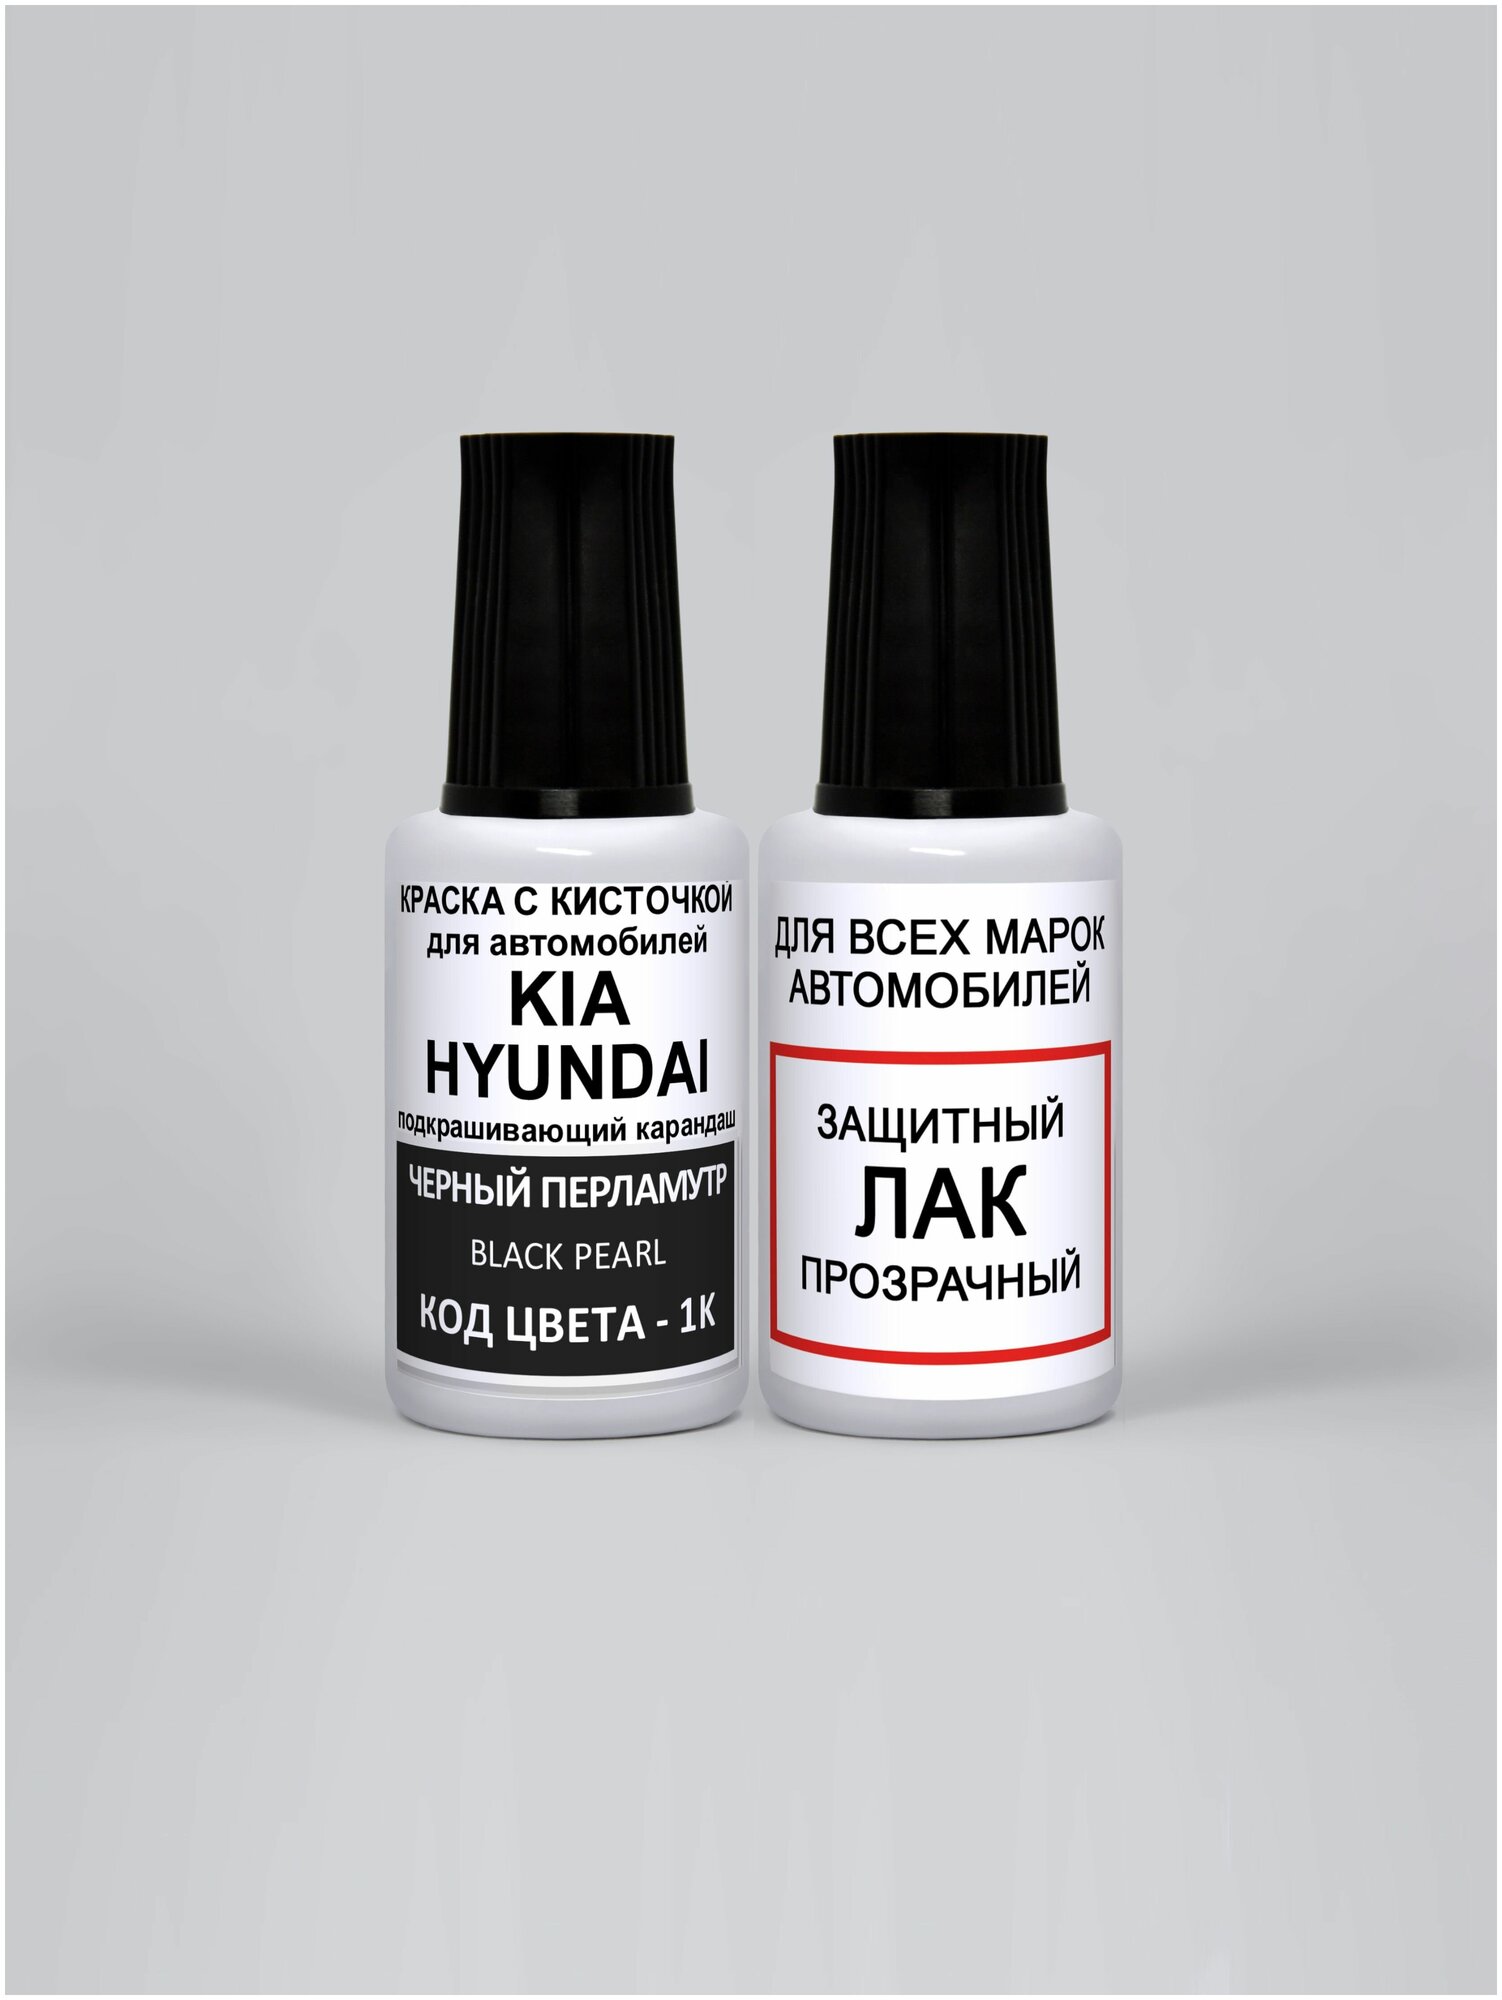 Краска автомобильная штрих по коду- 1K для Kia Черный перламутр Black Pearl эмаль + лак 2 предмета